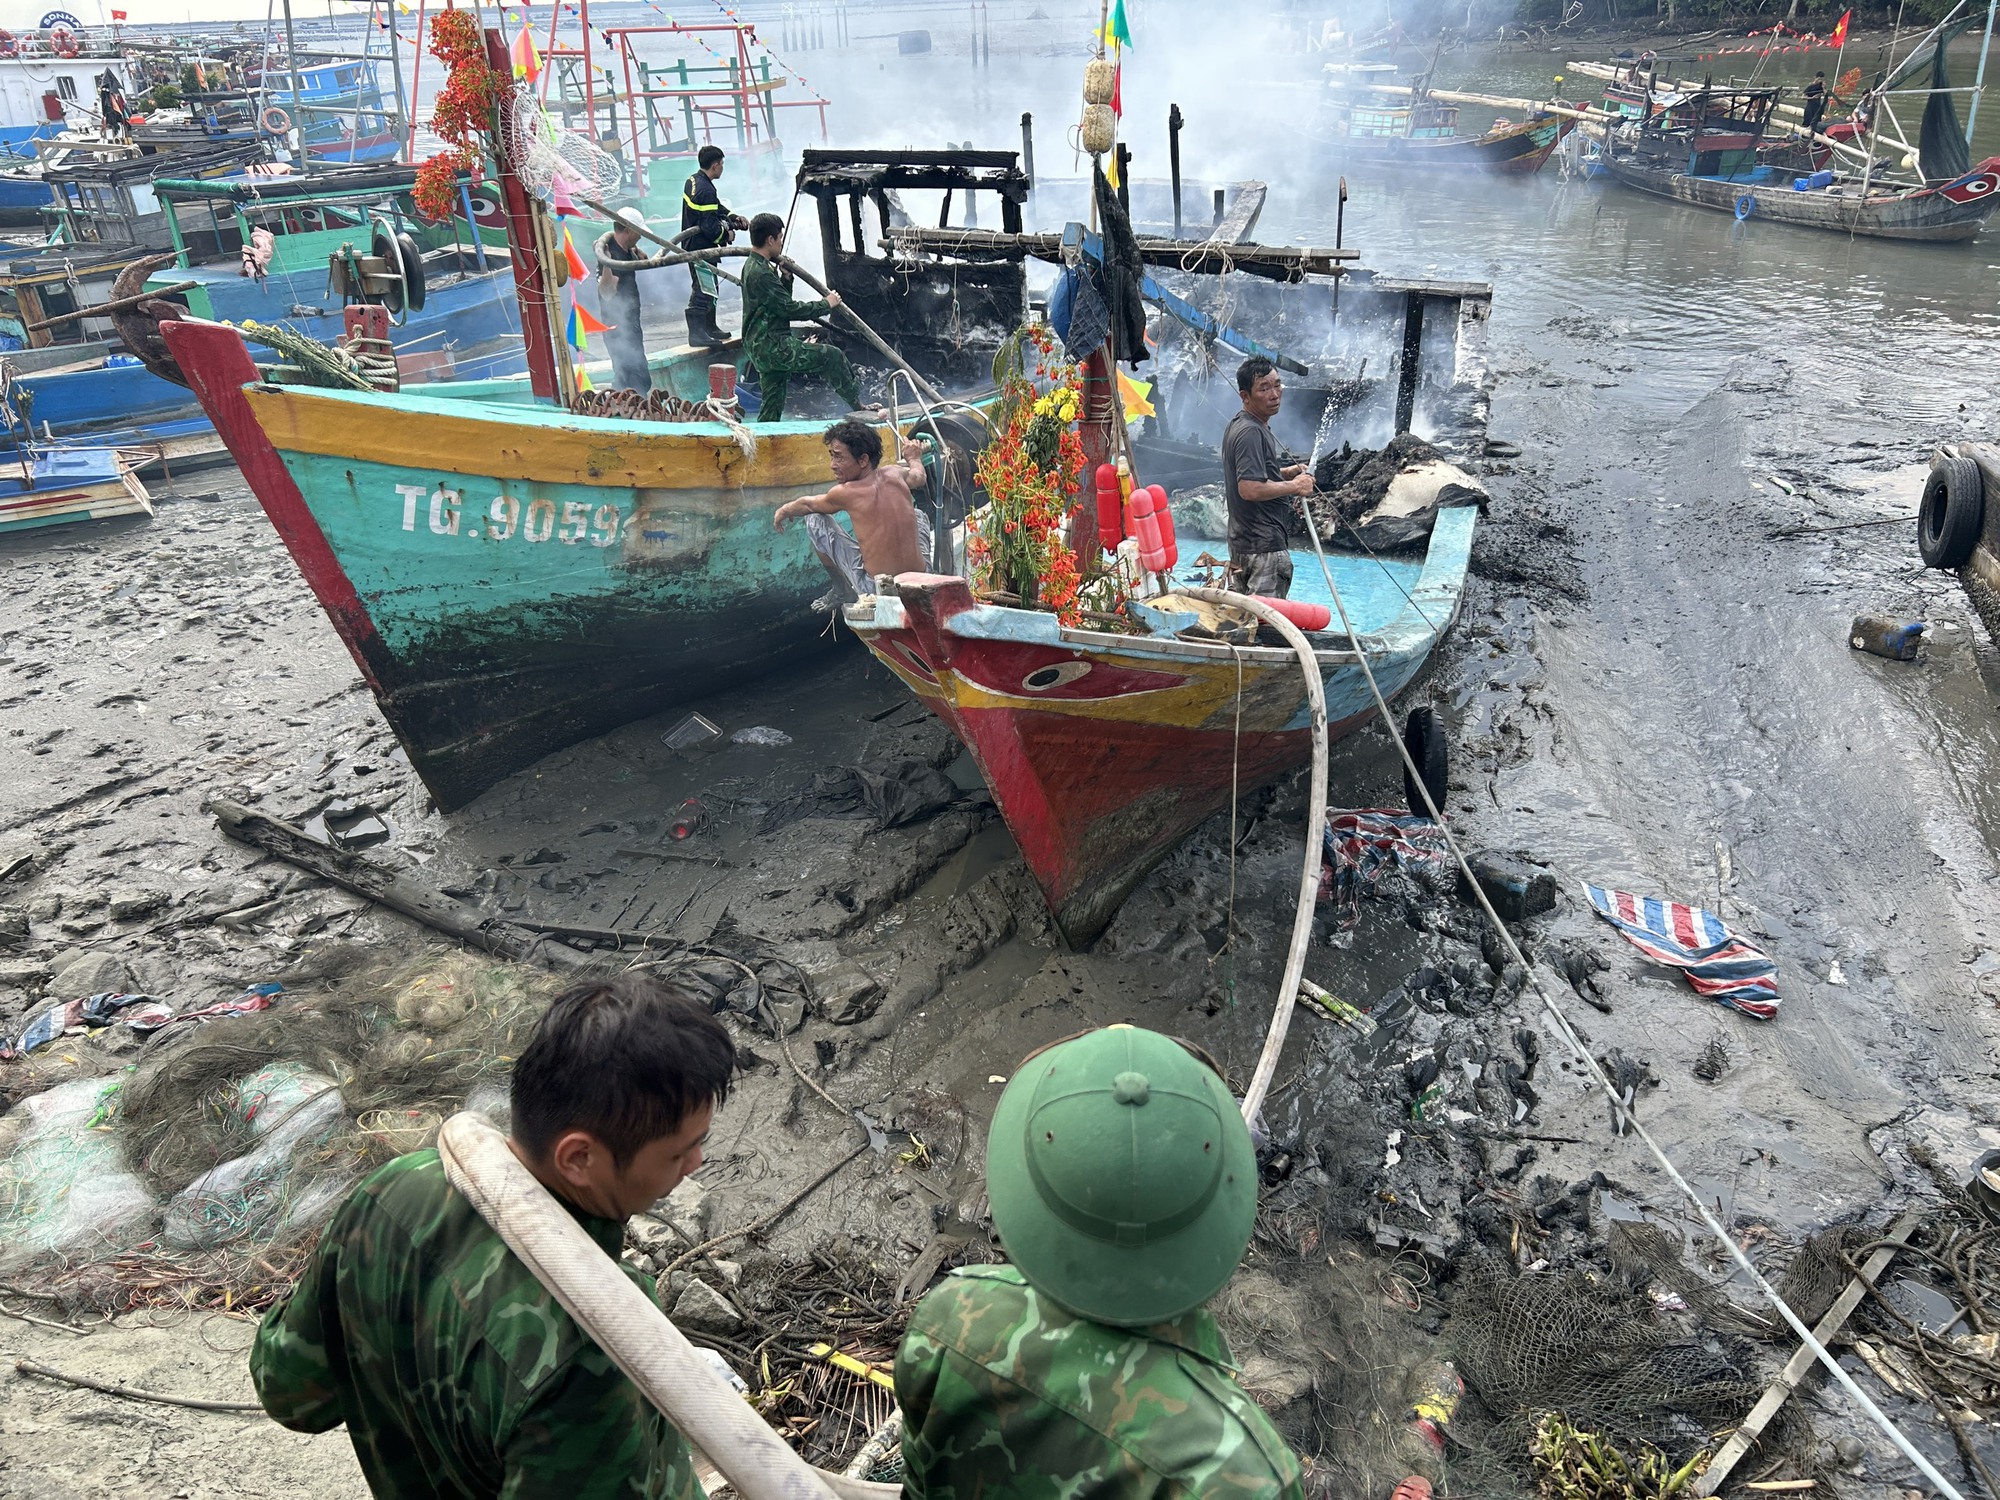 Hỏa hoạn bùng phát tại bến neo đậu tàu cá ở Cần Giờ, ngư dân thiệt hại nặng- Ảnh 1.